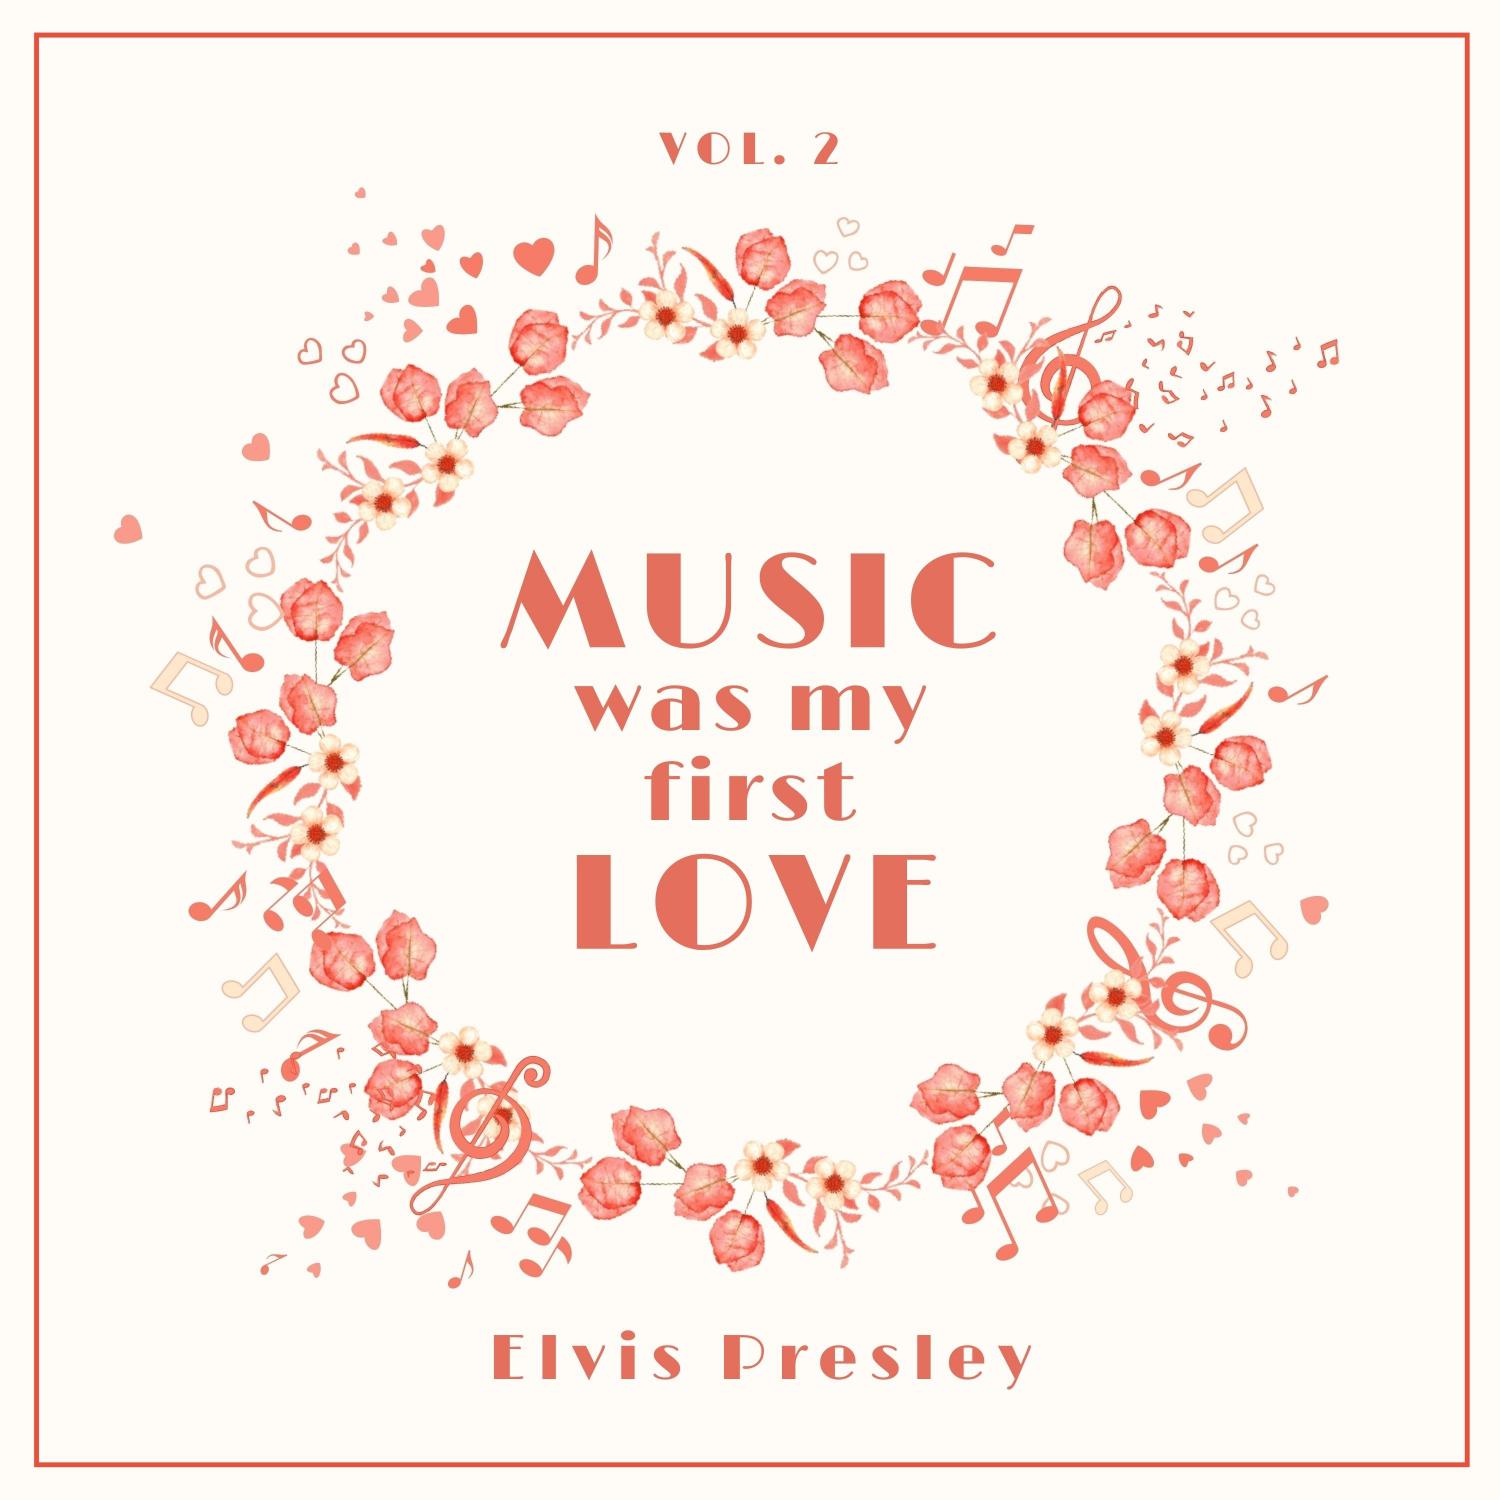 Elvis Presley - Who Am I (Original Mix)